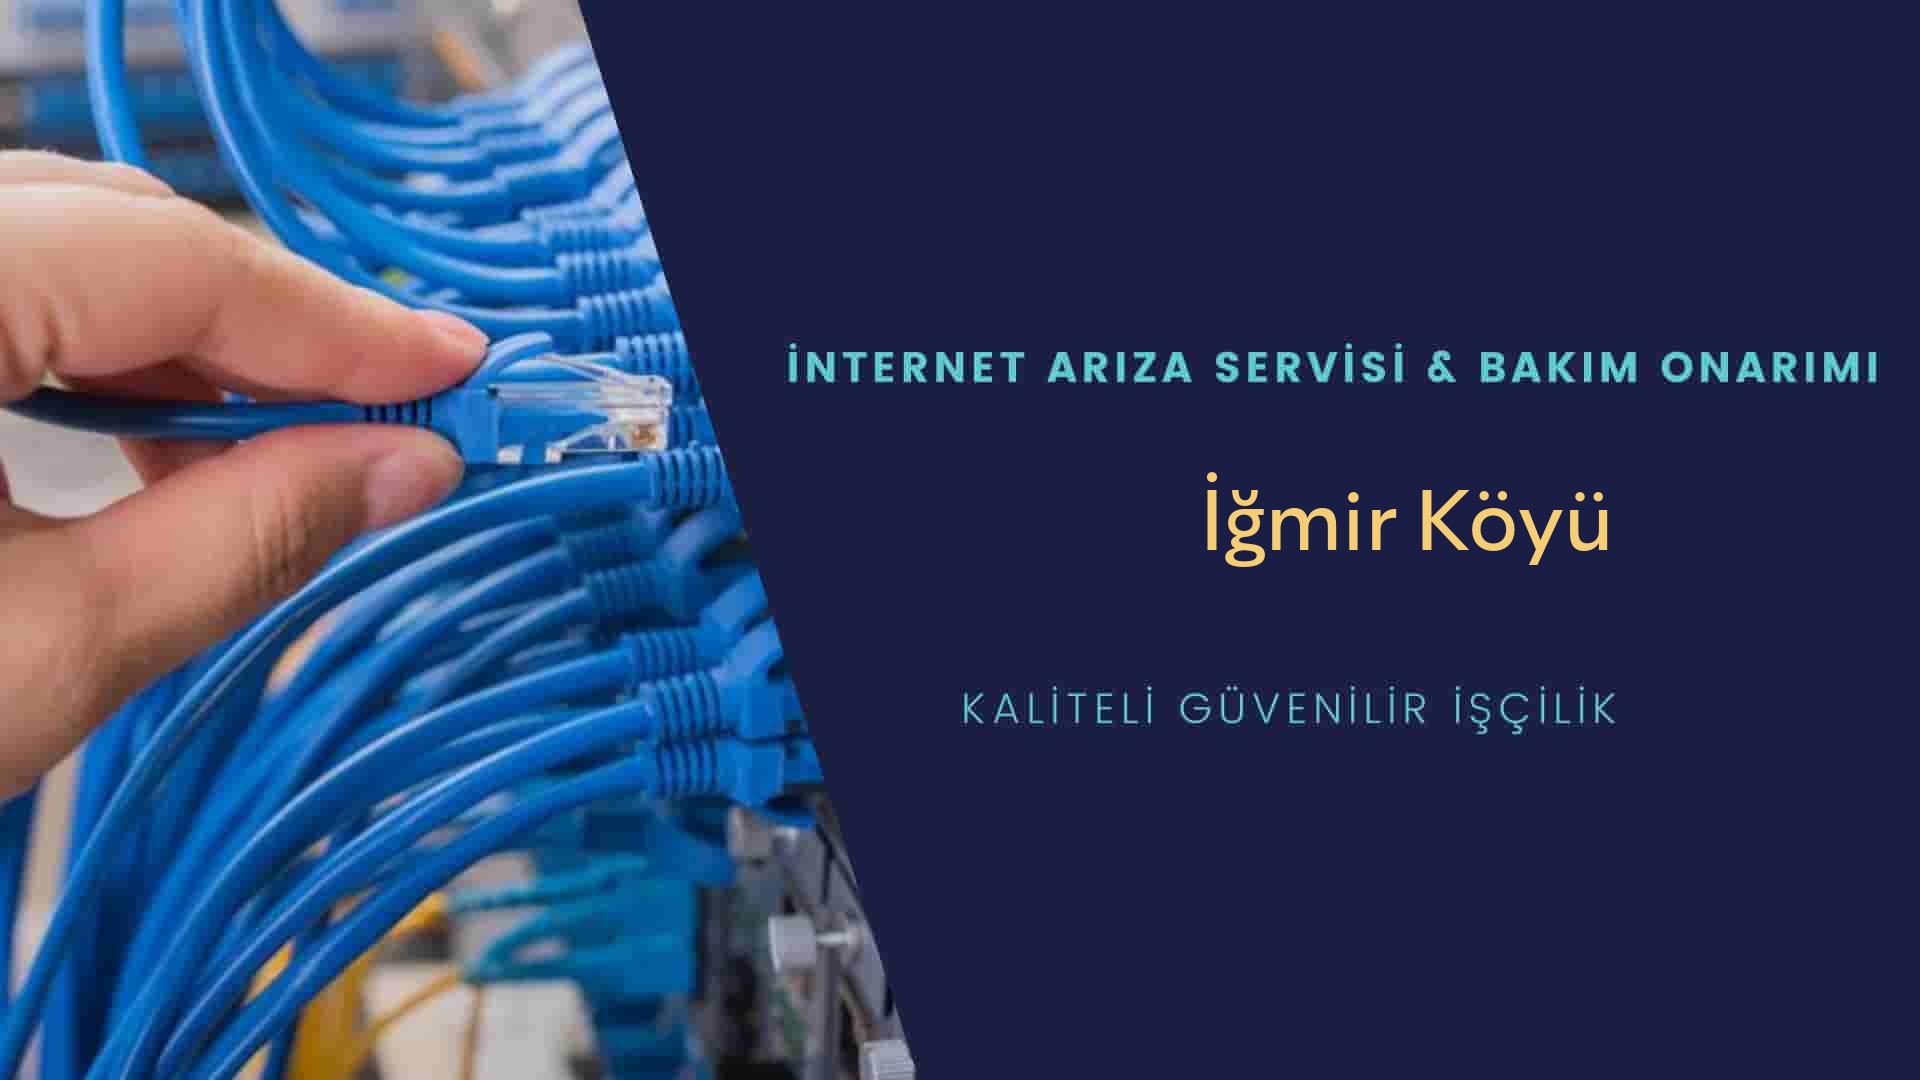 İğmir Köyü internet kablosu çekimi yapan yerler veya elektrikçiler mi? arıyorsunuz doğru yerdesiniz o zaman sizlere 7/24 yardımcı olacak profesyonel ustalarımız bir telefon kadar yakındır size.